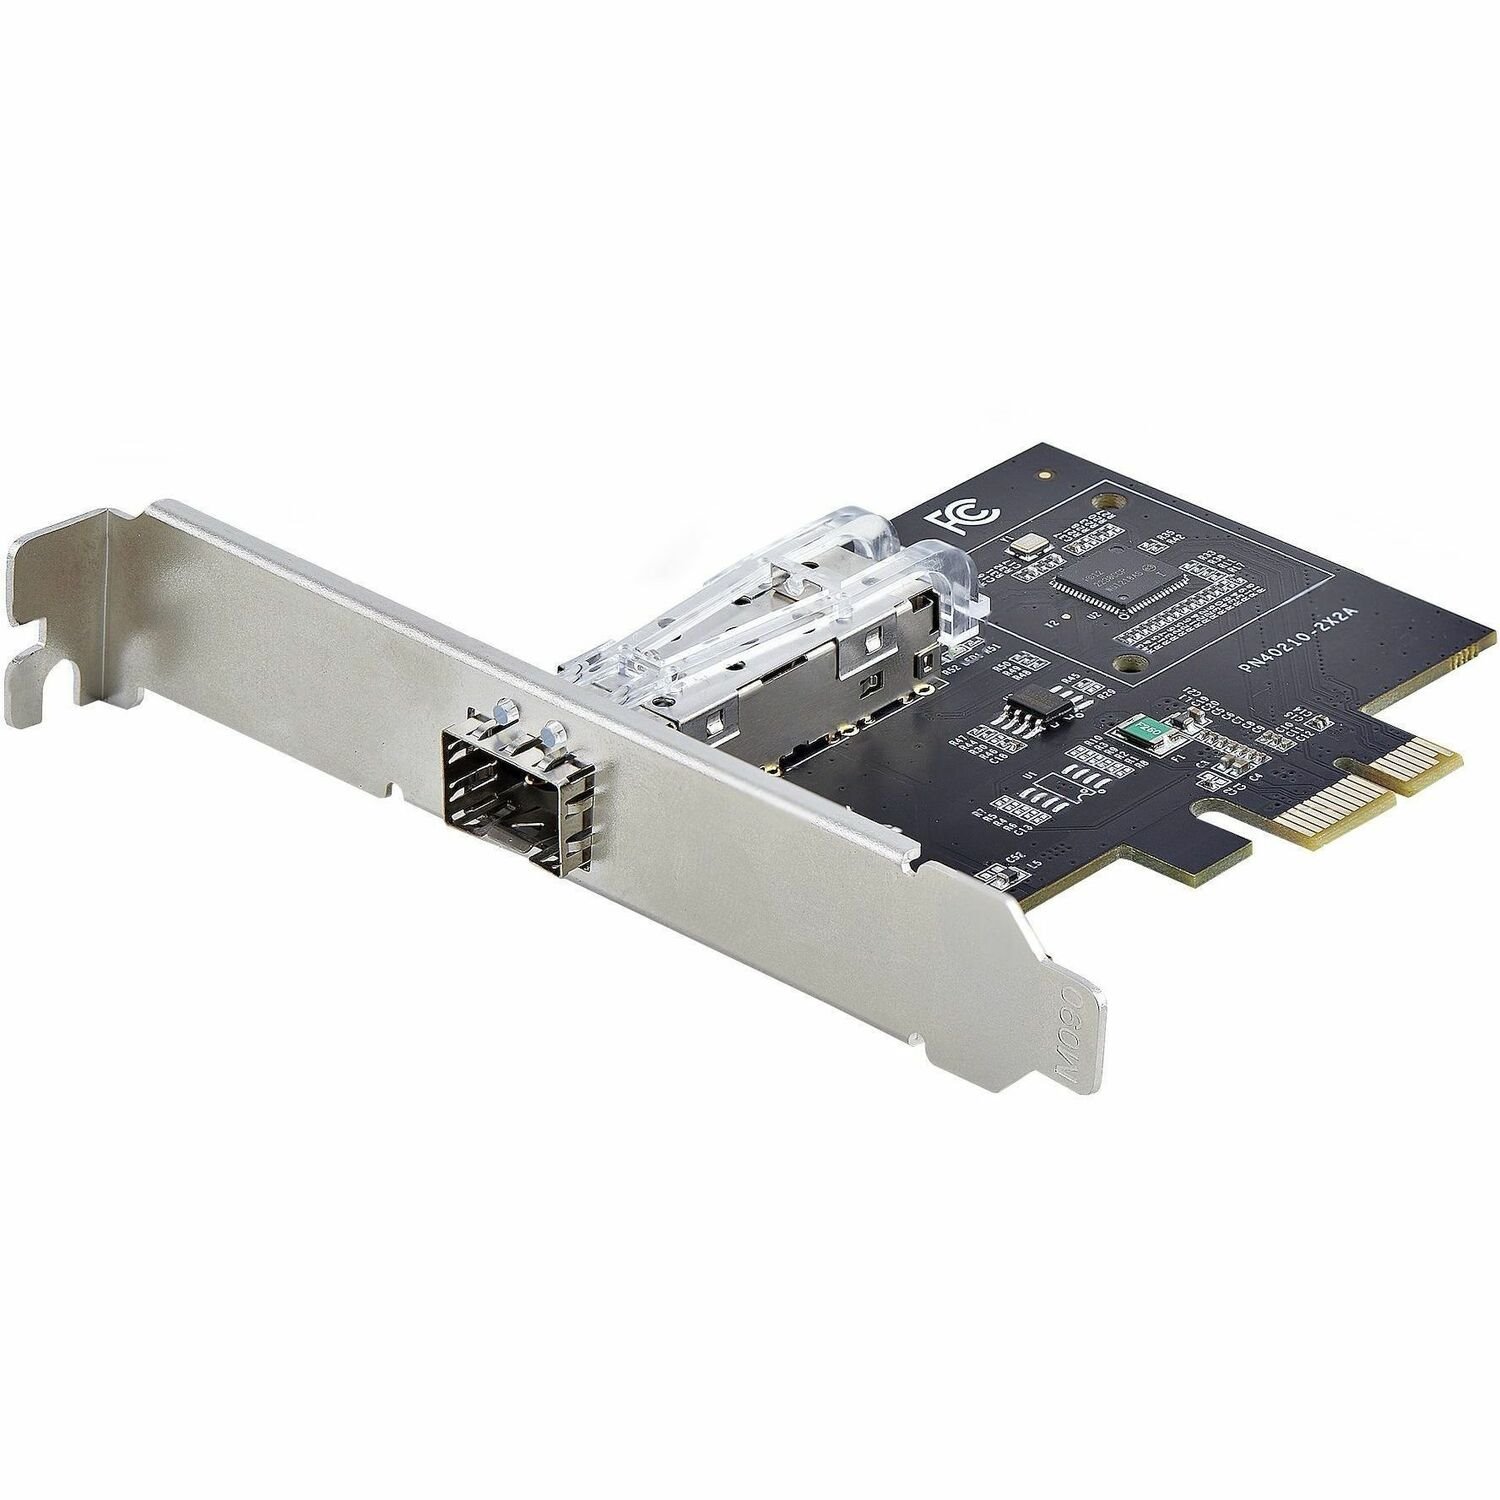 StarTech.com Gigabit Ethernet Card for Computer/Server/Workstation - 1000Base-T, 1000Base-KX, 1000Base-SX, 1000Base-LX - SFP (mini-GBIC) - Plug-in Card